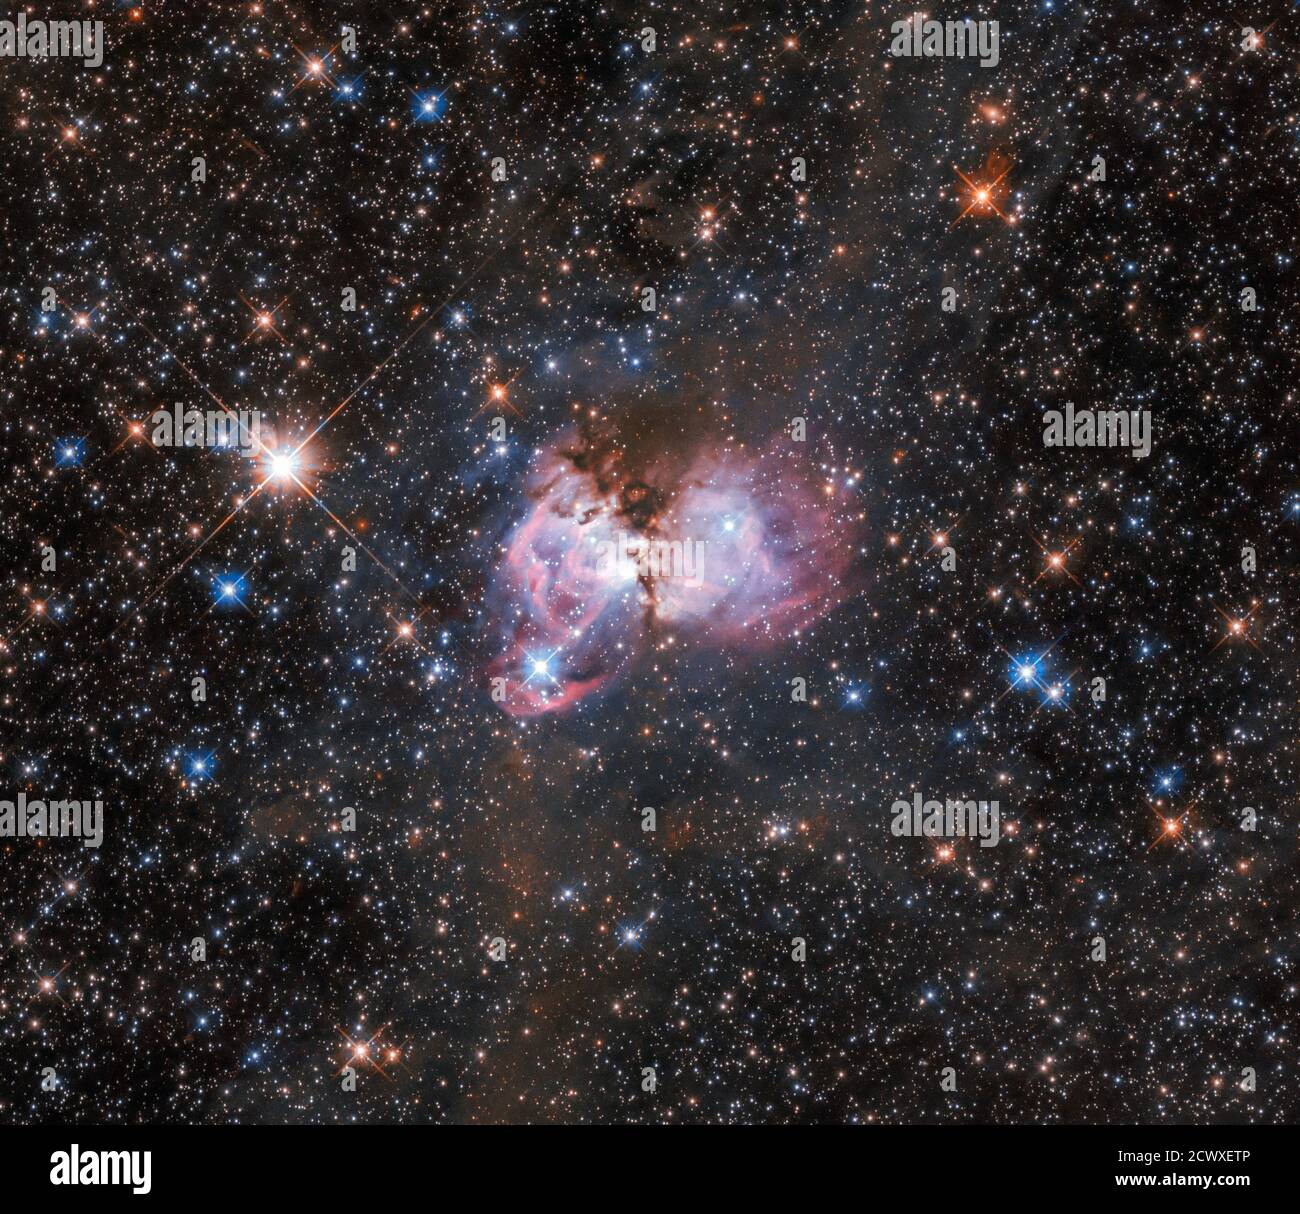 Un laboratoire cosmique: LHA 120-N 150 cette scène de création stellaire, capturée par le télescope spatial Hubble, se trouve près de la périphérie de la célèbre Tarantula Nebula, la plus grande pépinière stellaire connue de l'univers local. Appelé LHA 120-N 150, ce nuage de gaz et de poussière, ainsi que les nombreuses étoiles jeunes et massives qui l'entourent, est le laboratoire parfait pour étudier l'origine des étoiles massives. La nébuleuse est située à plus de 160,000 années-lumière dans le grand nuage Magellanique, une galaxie irrégulière naine voisine qui orbite notre galaxie, la voie lactée. Également connu sous le nom de 30 Doradus ou NGC 2070, TH Banque D'Images